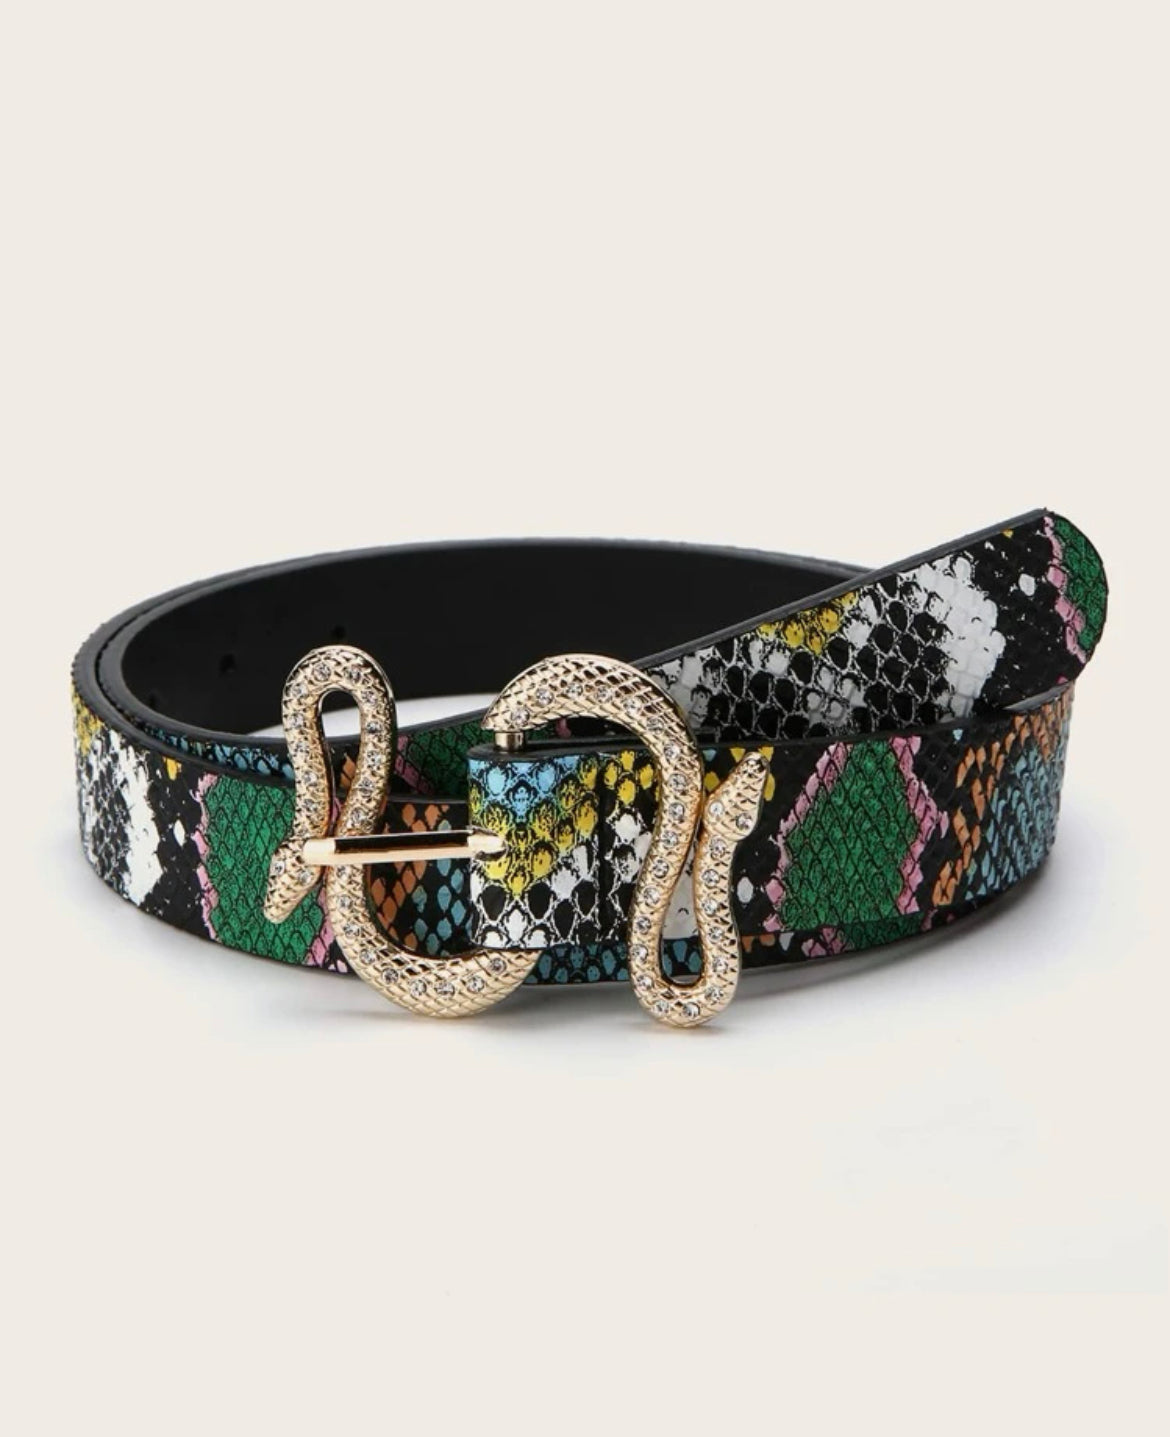 Multicolored Snakeskin Pattern Serpentine Buckle Belt